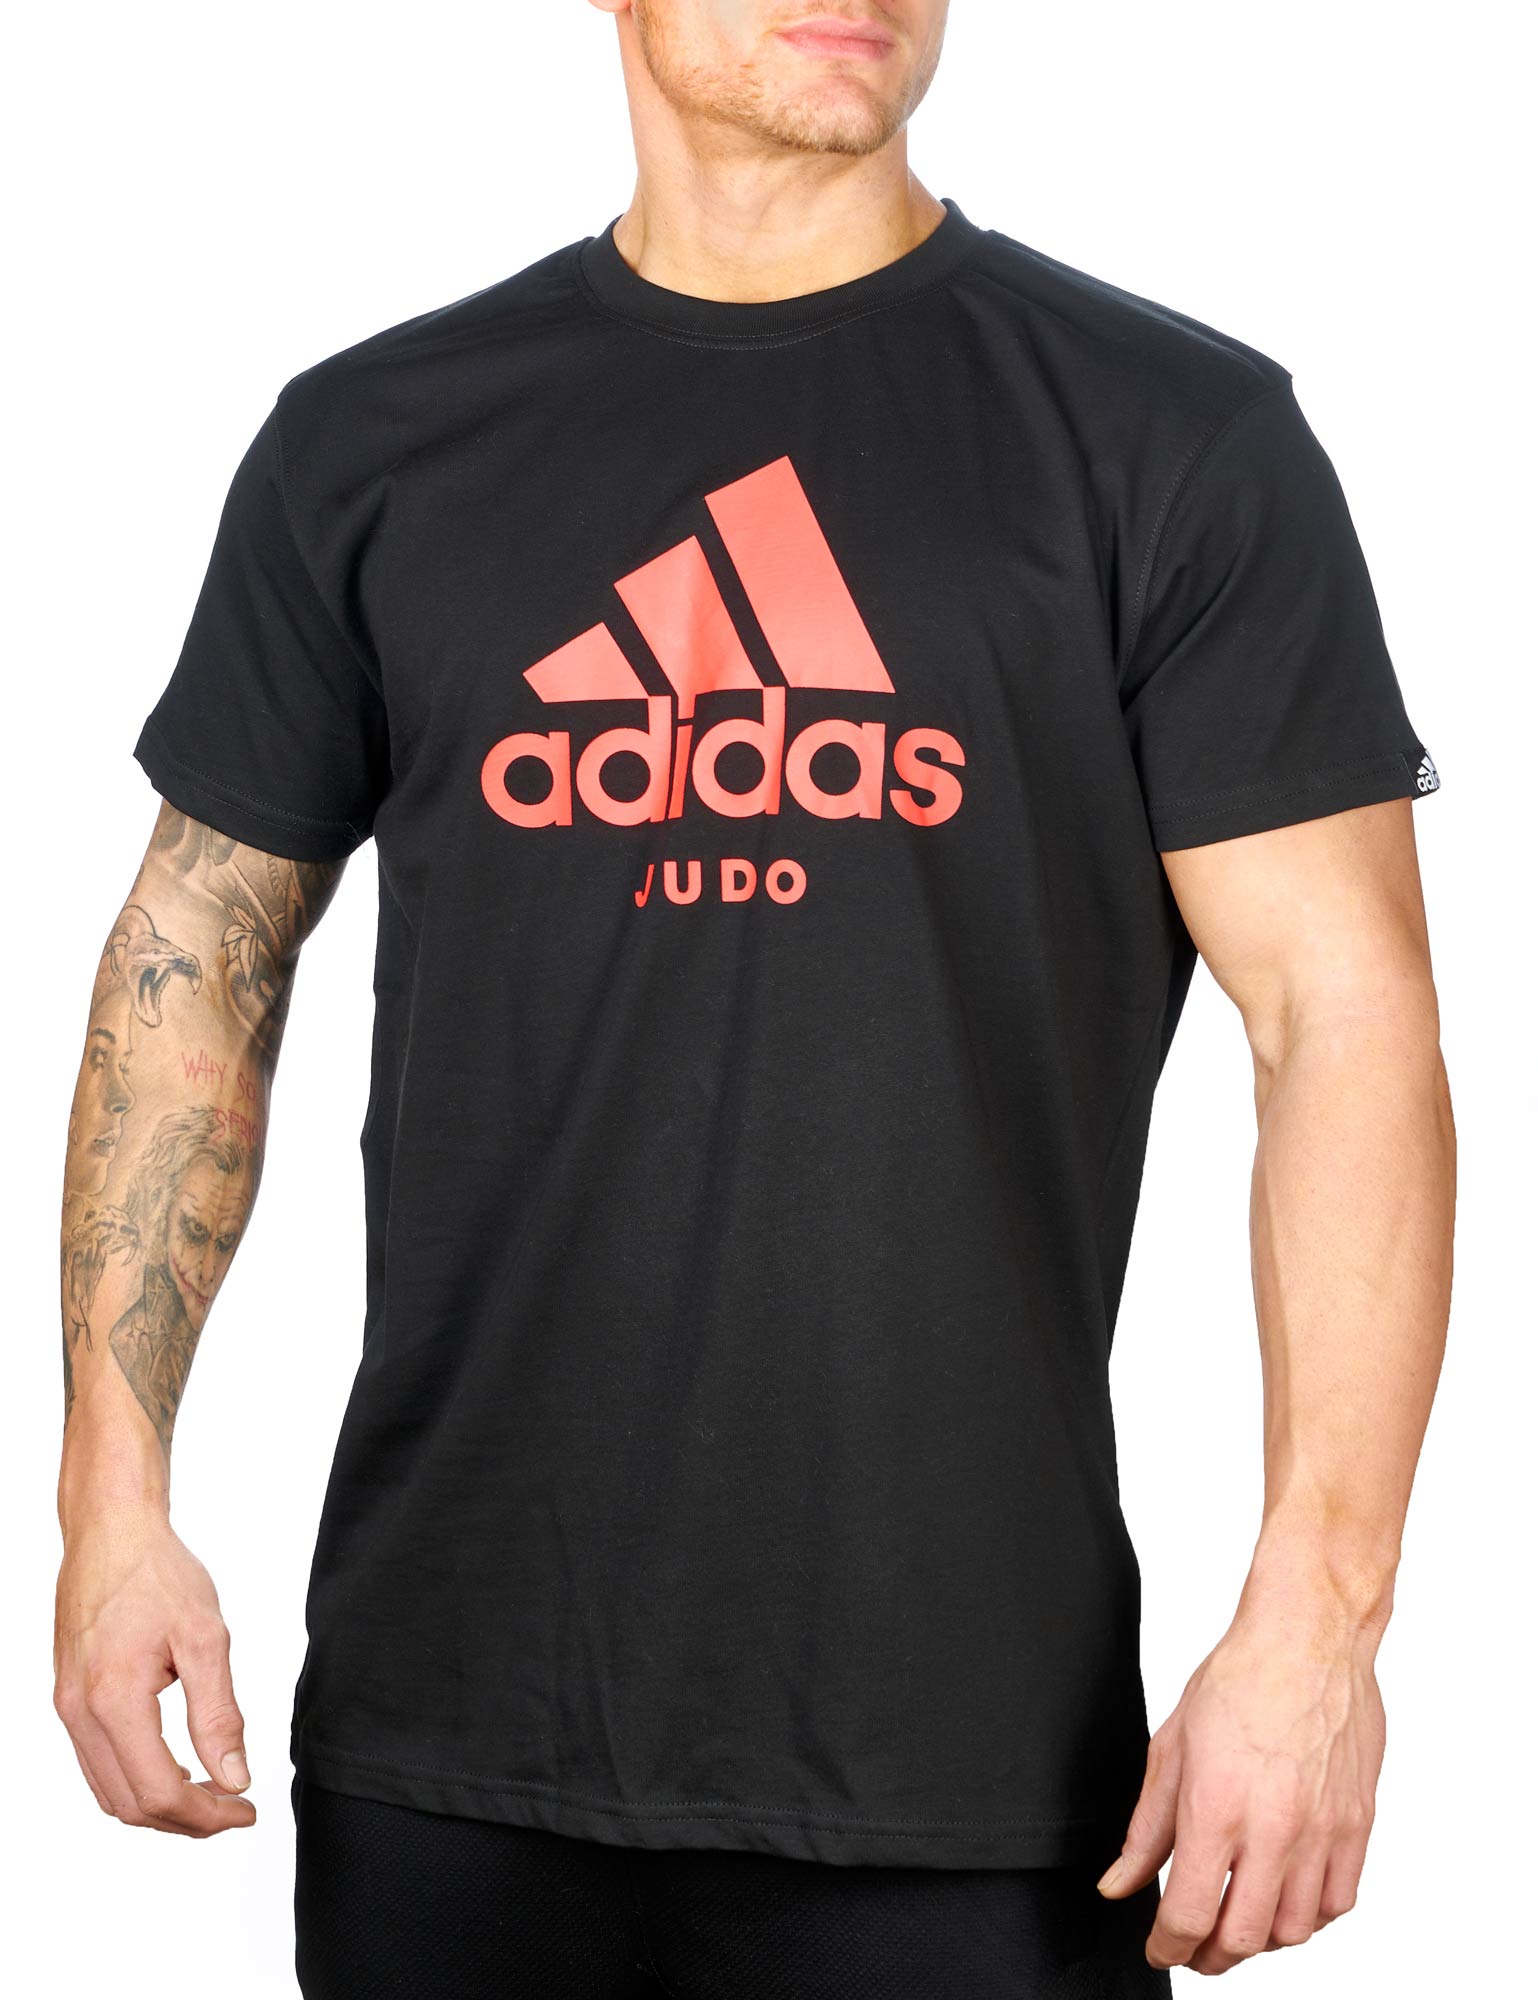 adidas Community Line T-Shirt Judo Performance ADICTJ black/red